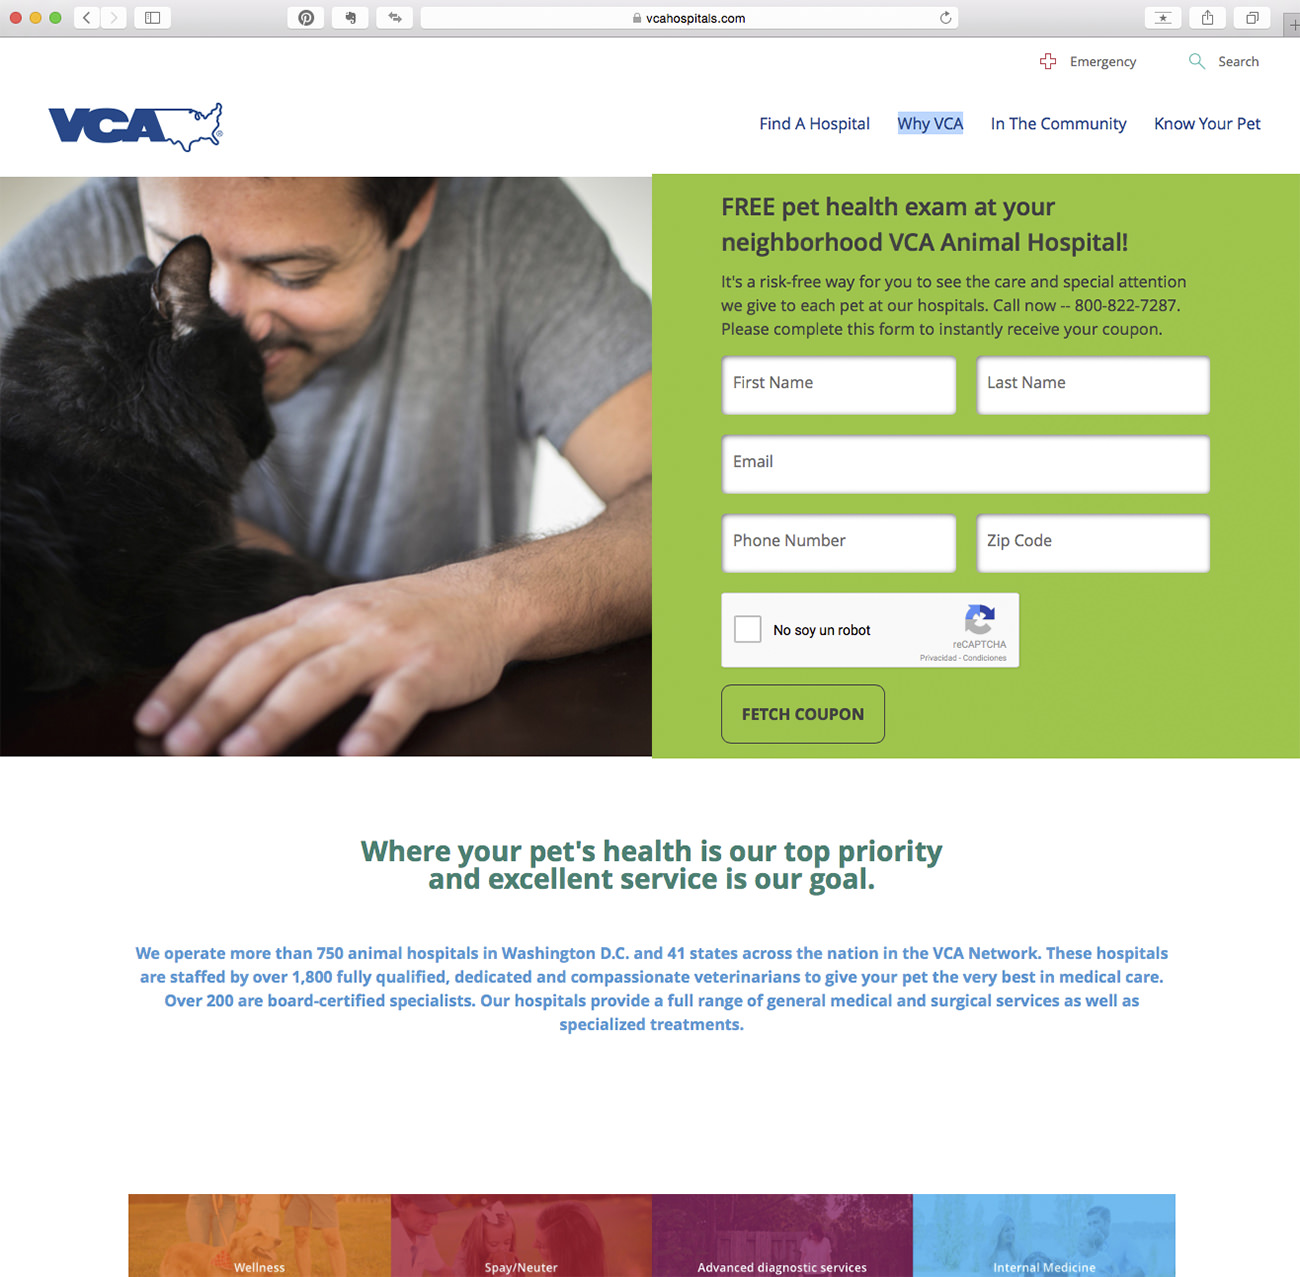 Primera consulta gratuita - Marketing para clínicas veterinarias